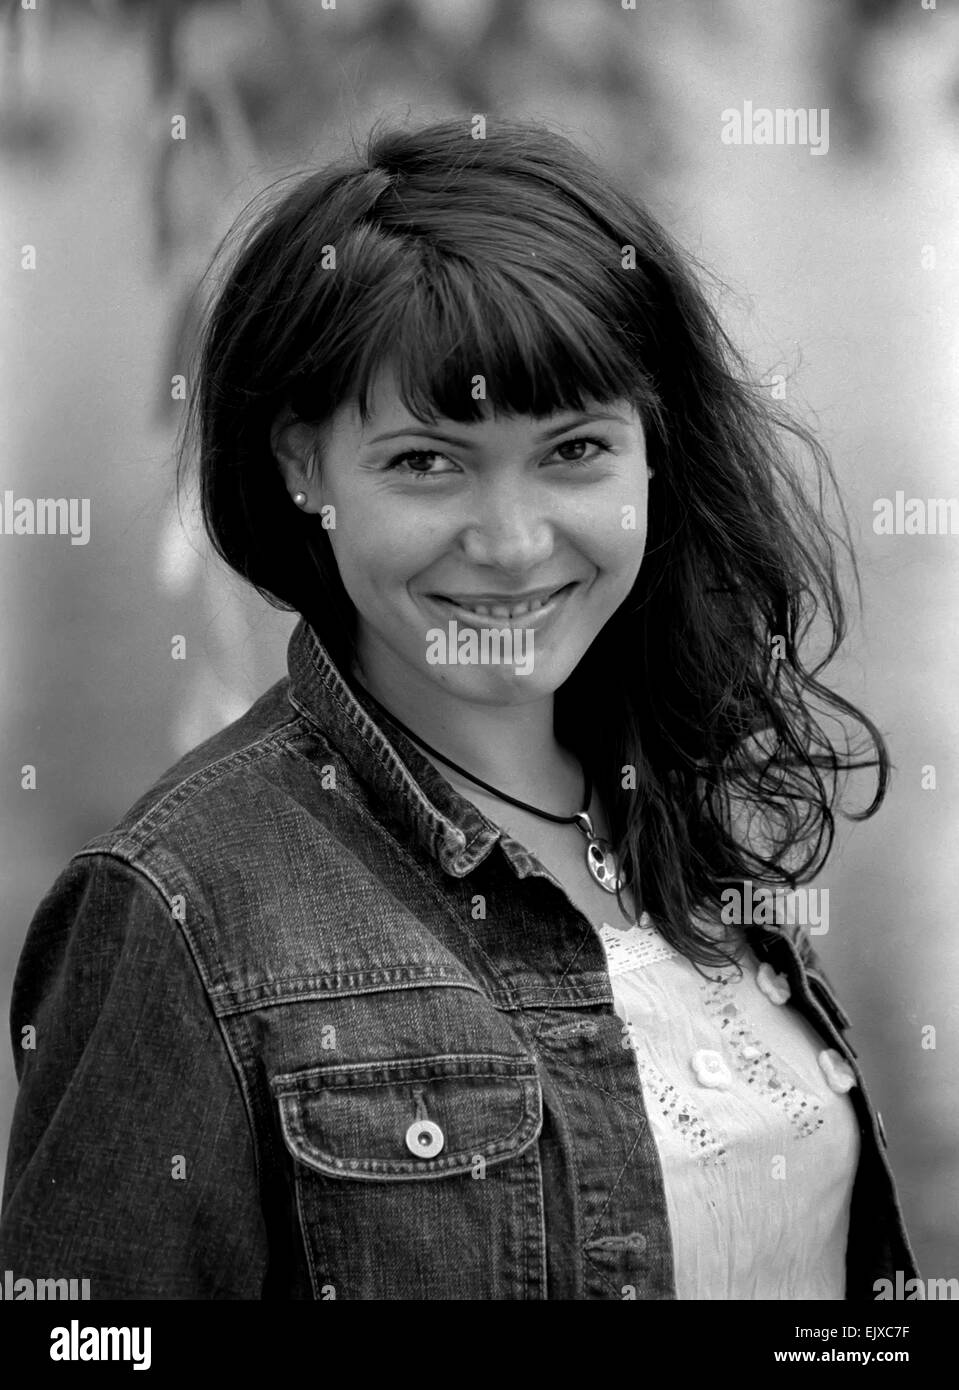 Schwarz-weiß-Porträt einer lächelnden jungen Frau in Jeans Jacke und mit rundem Anhänger. Stockfoto